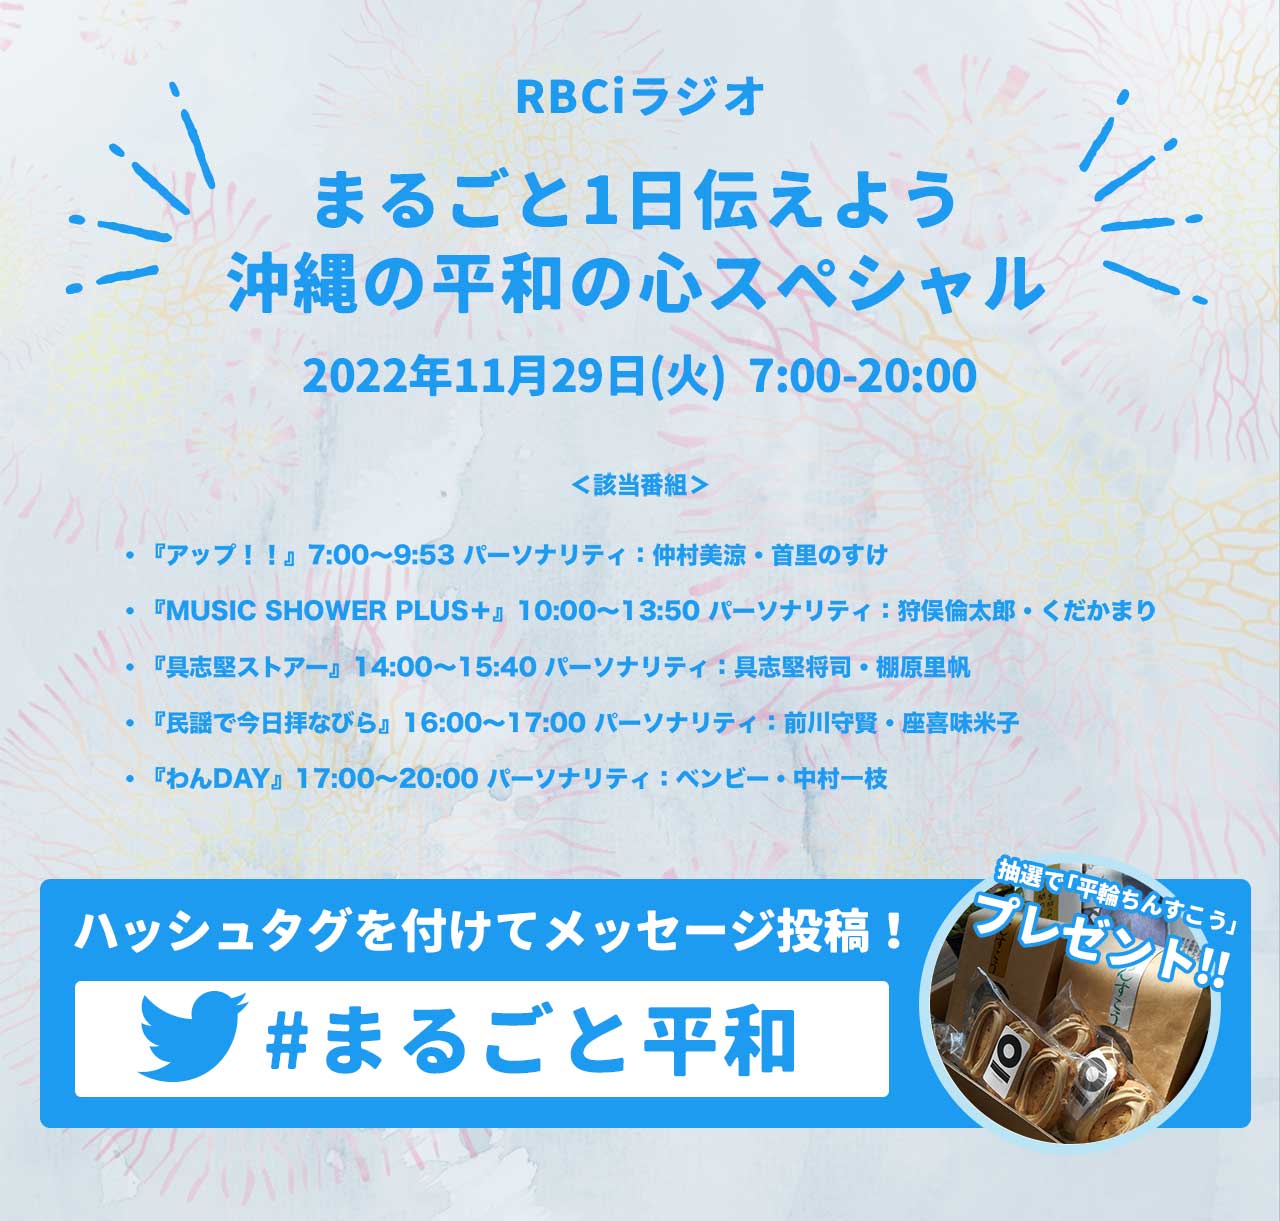 11月29日(火)RBCiラジオ 「まるごと1日伝えよう 沖縄の平和の心スペシャル」放送のお知らせ